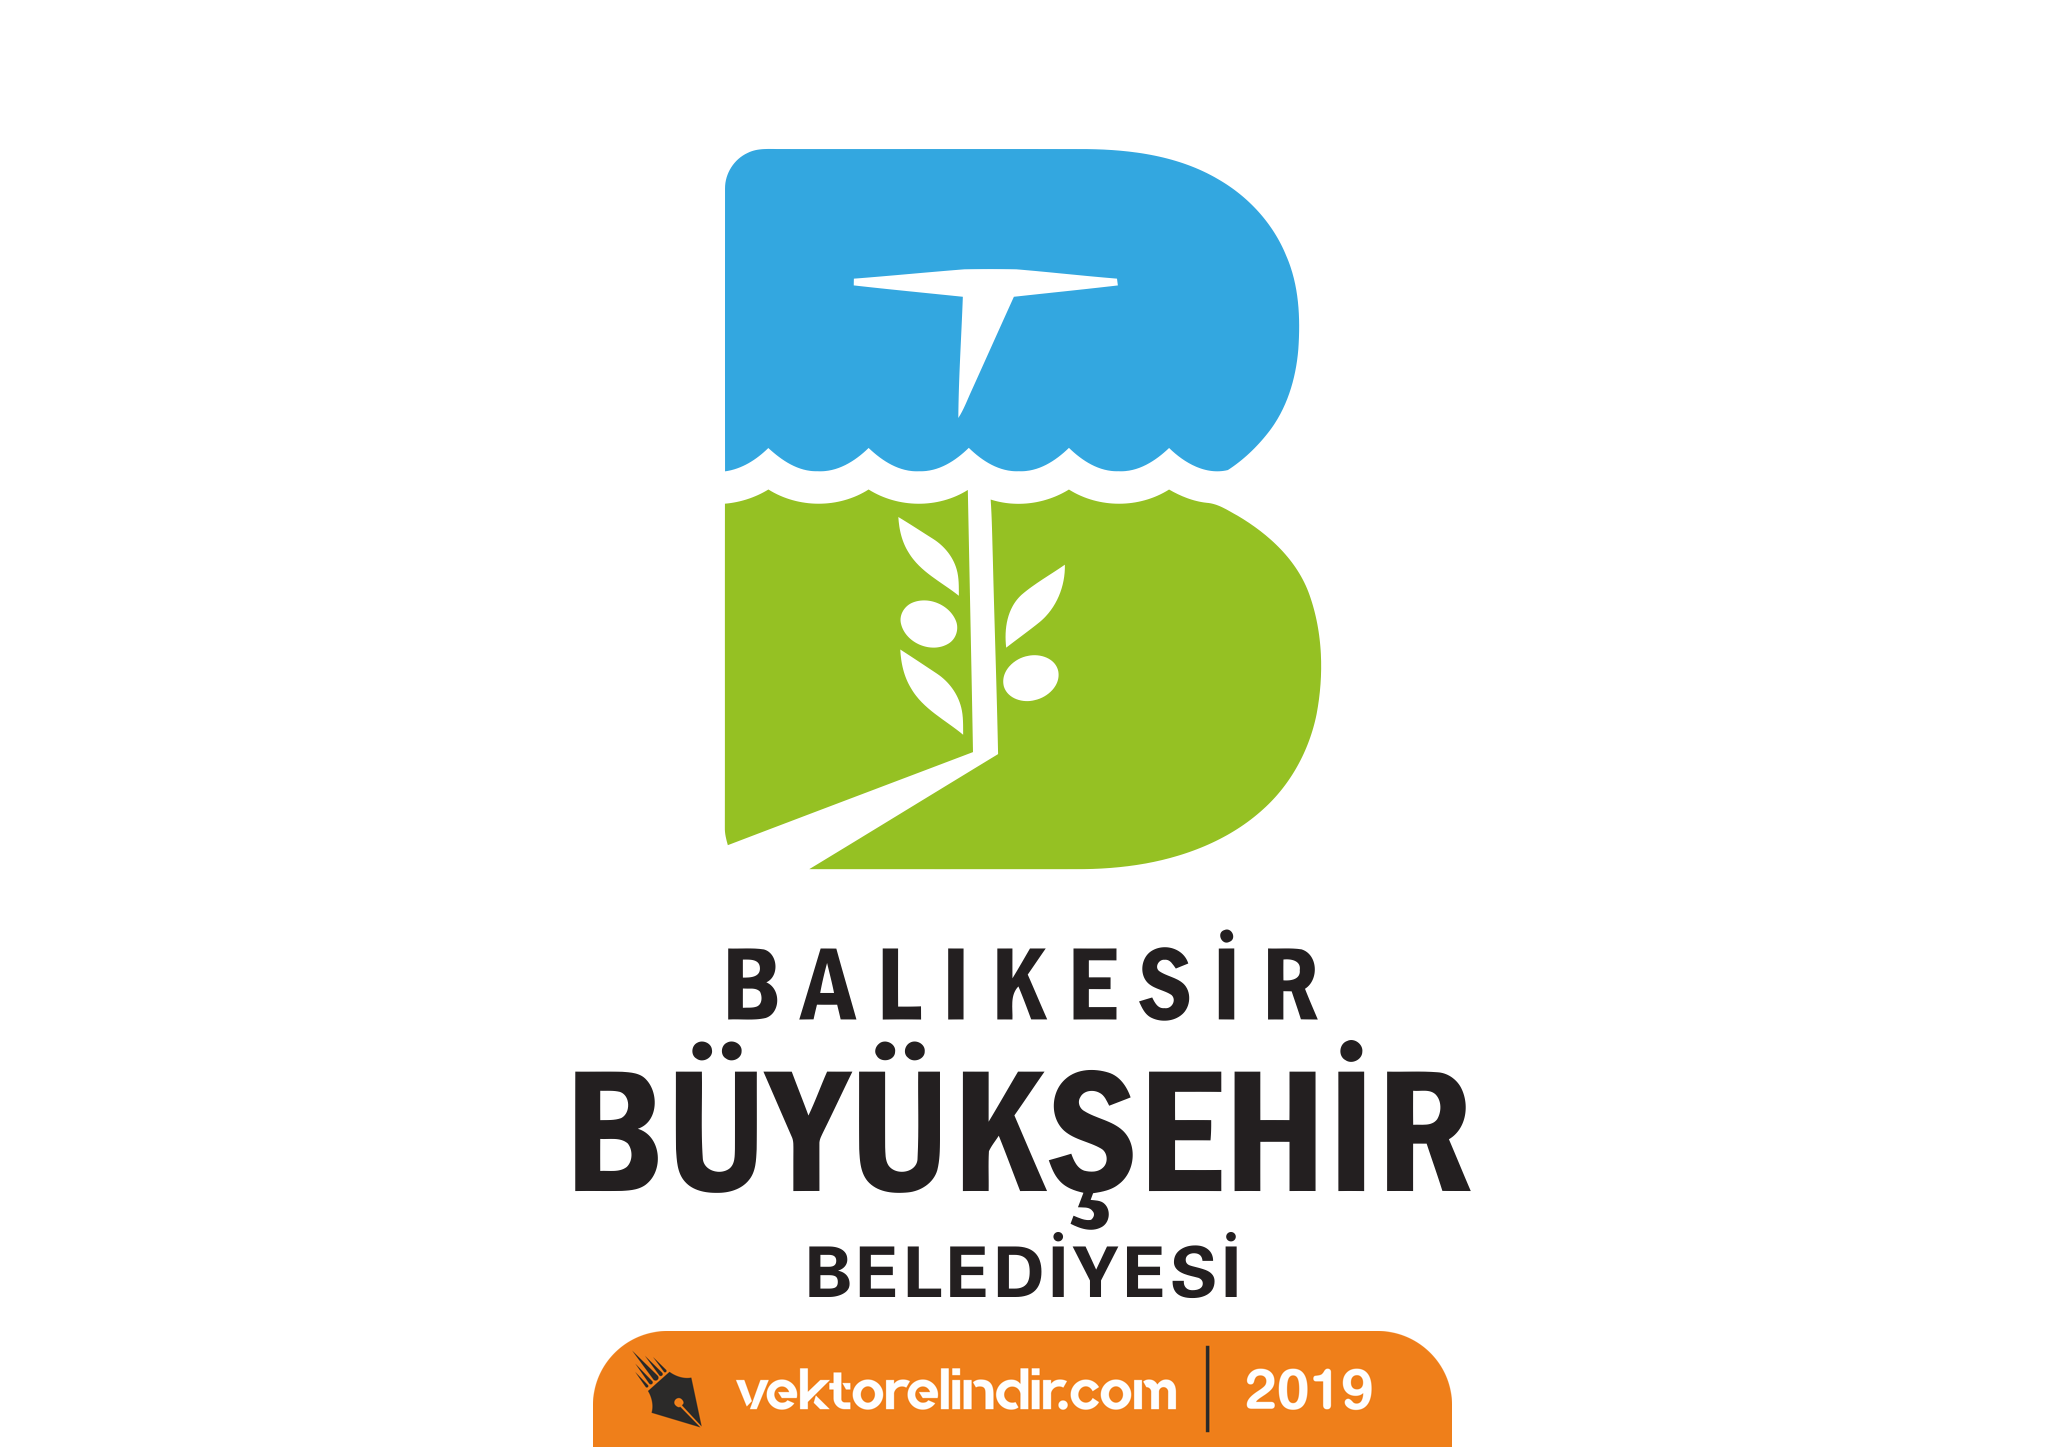 Balıkkesir Büyükşehir Belediyesi Logo, Amblem